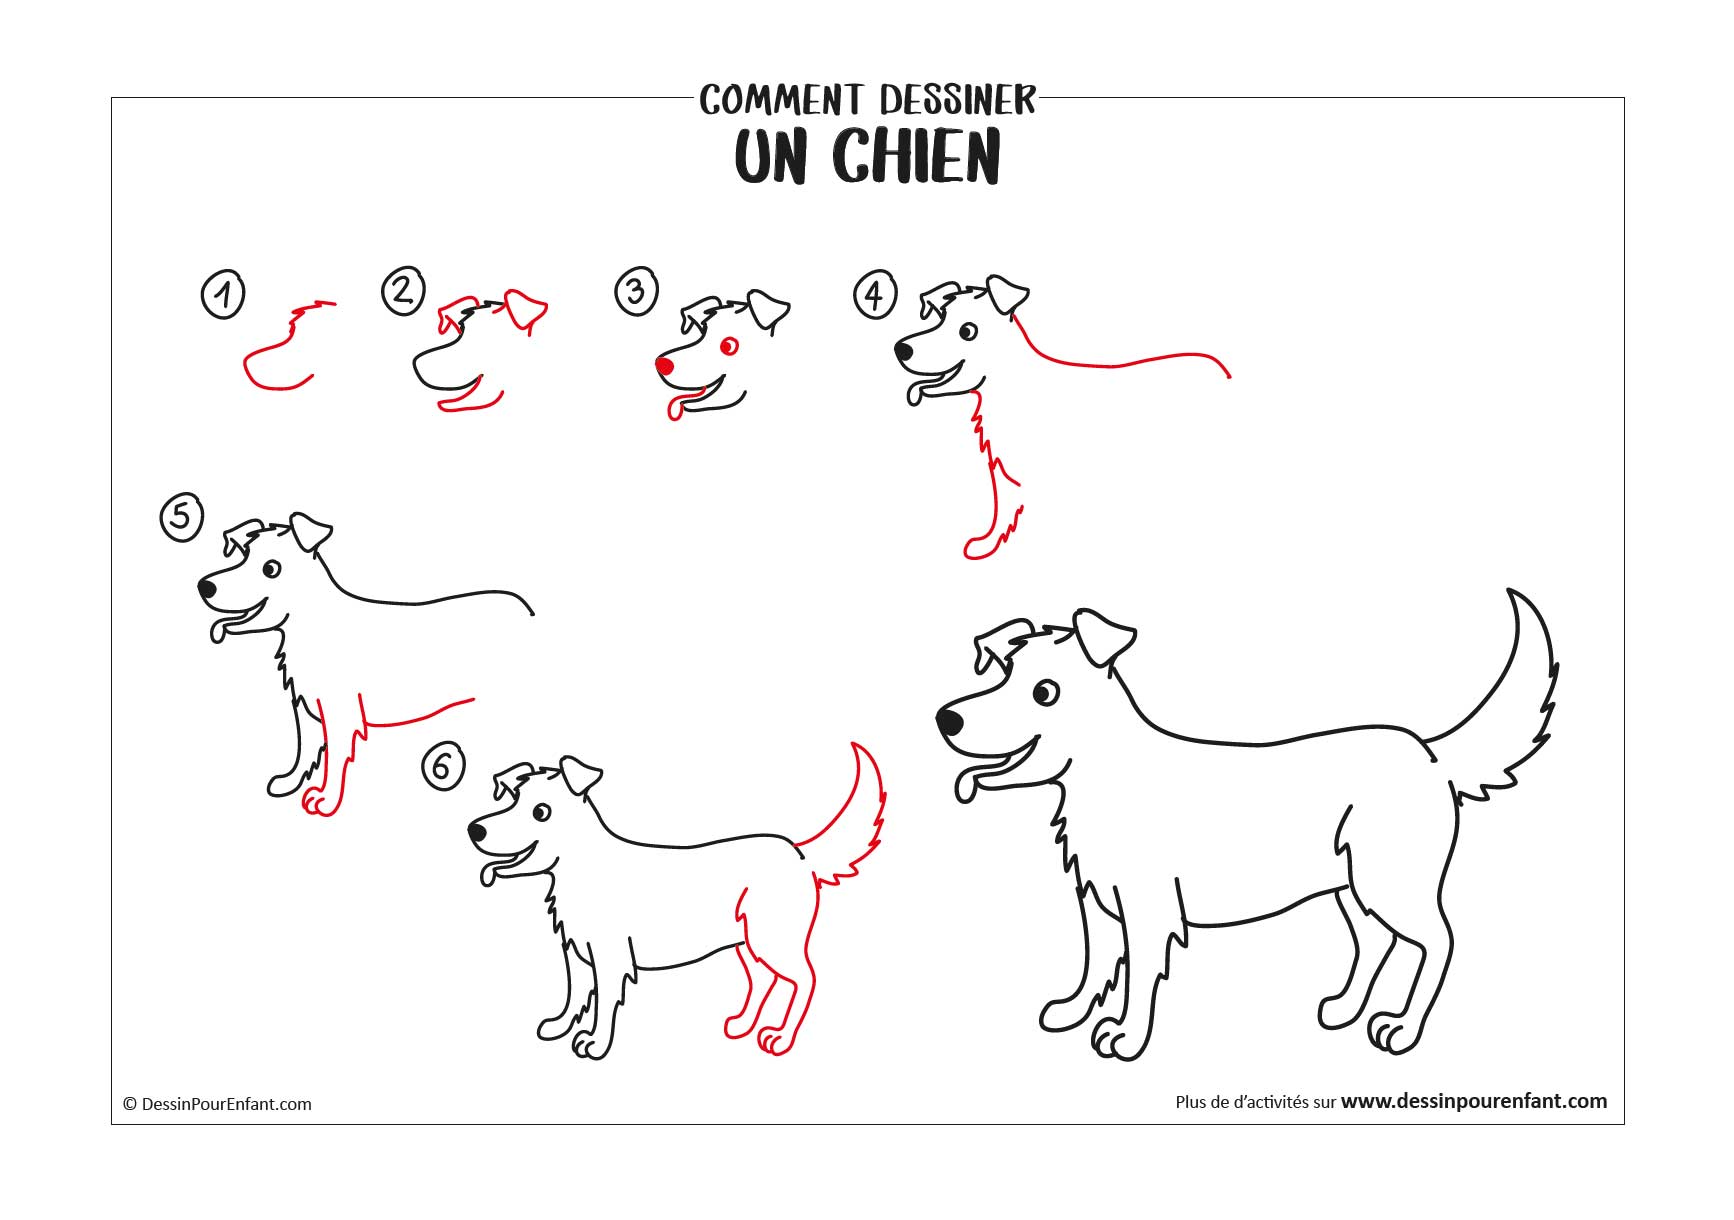 Comment dessiner un chien en 6 étapes - Dessin pour enfant